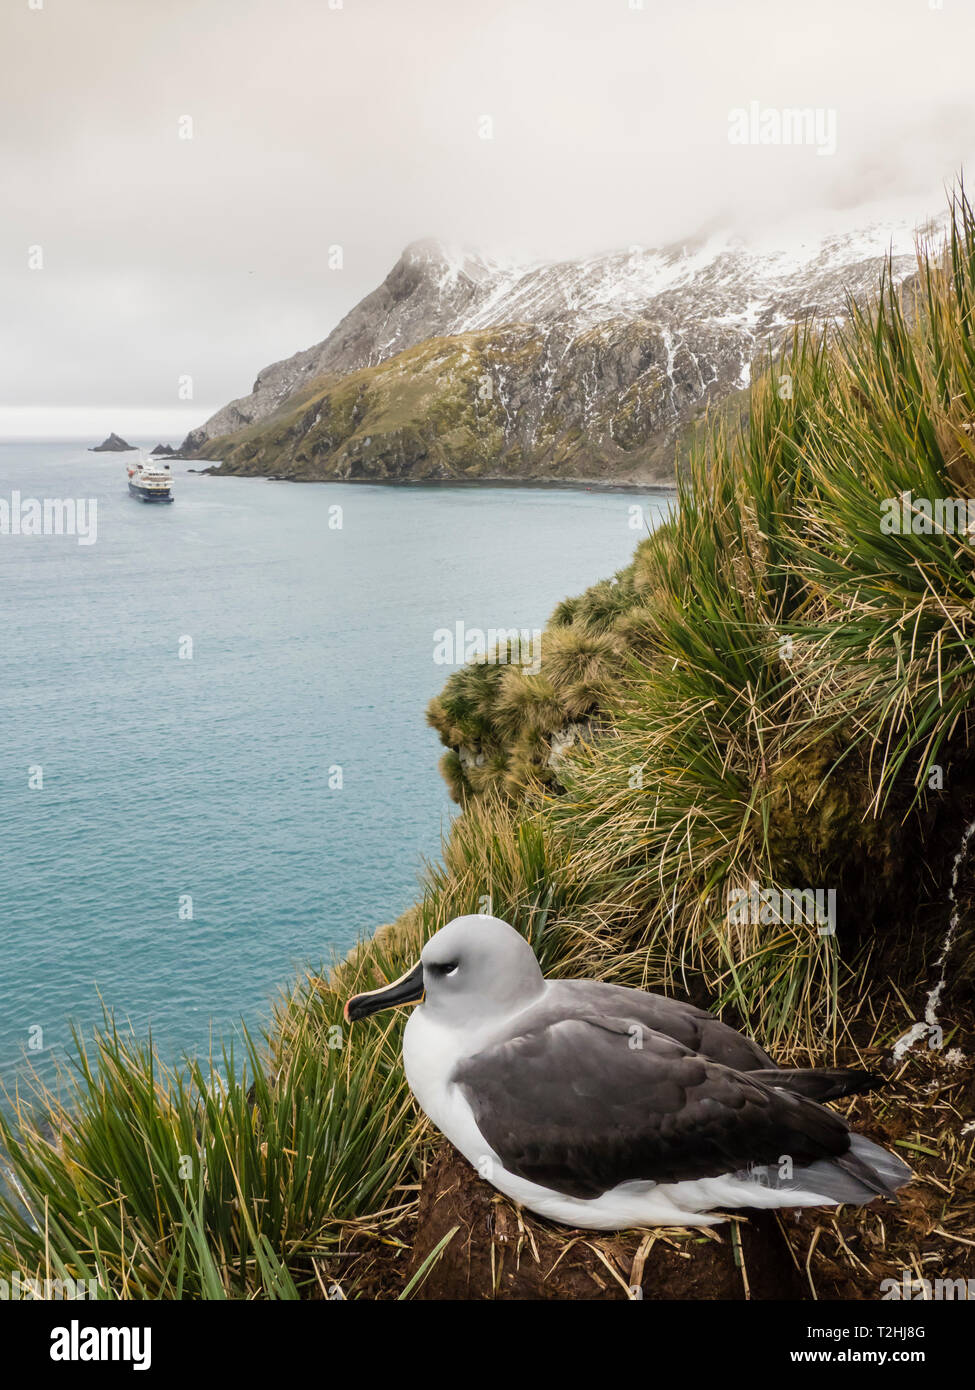 Des profils albatros à tête grise, Thalassarche chrysostoma, sur son nid sur l'herbe à tussock Elsehul, South Georgia Island, Océan Atlantique Banque D'Images